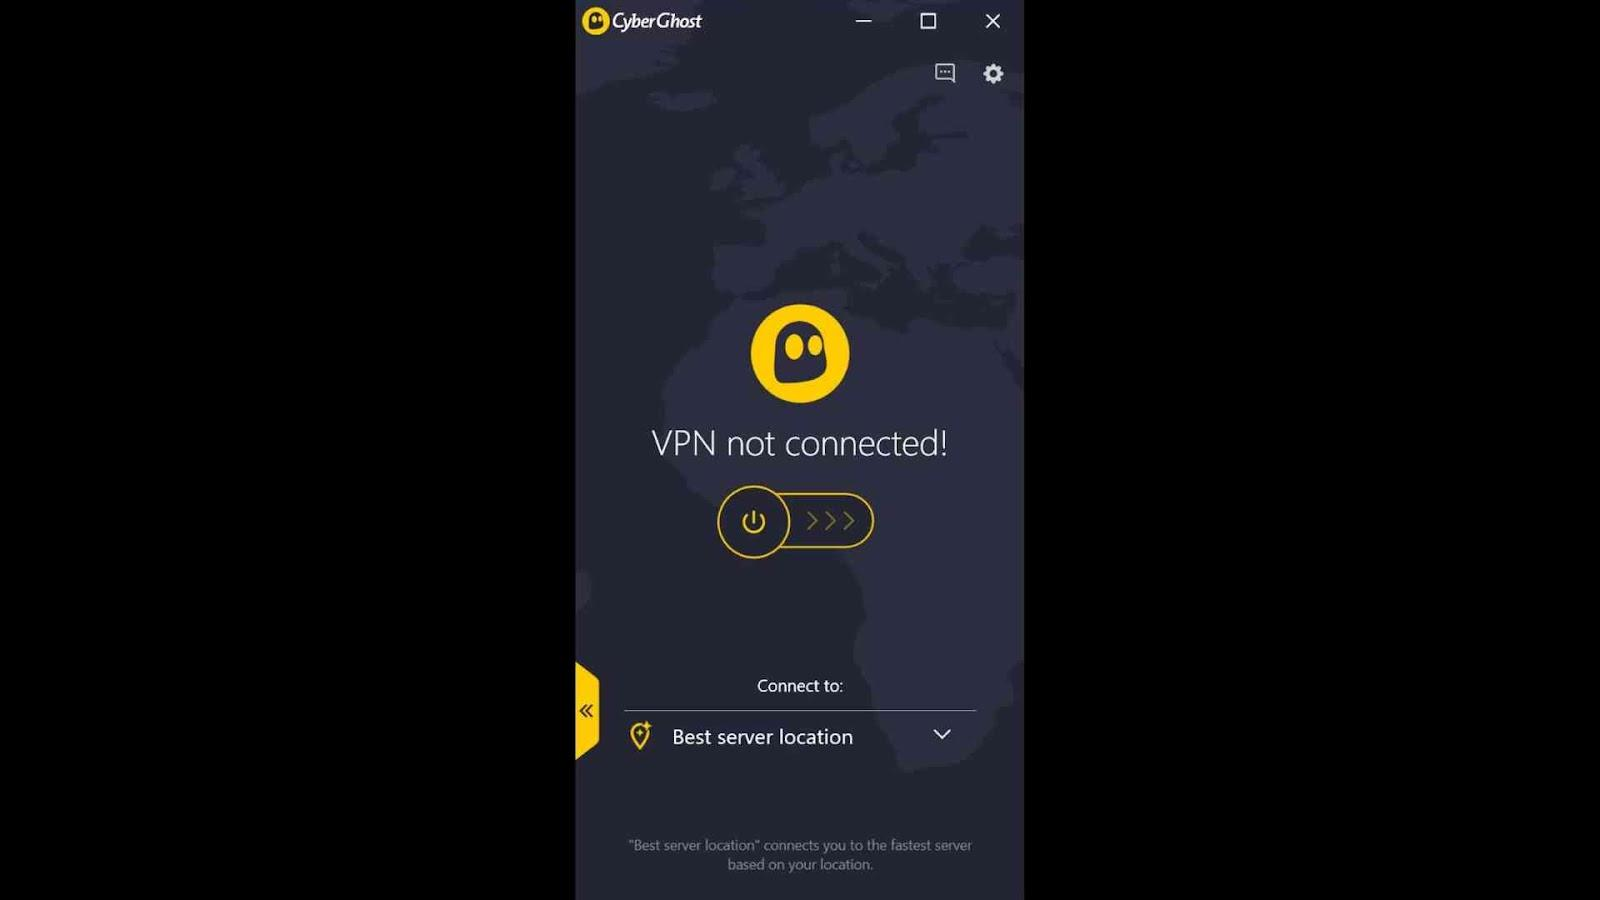 CyberGhost VPN 